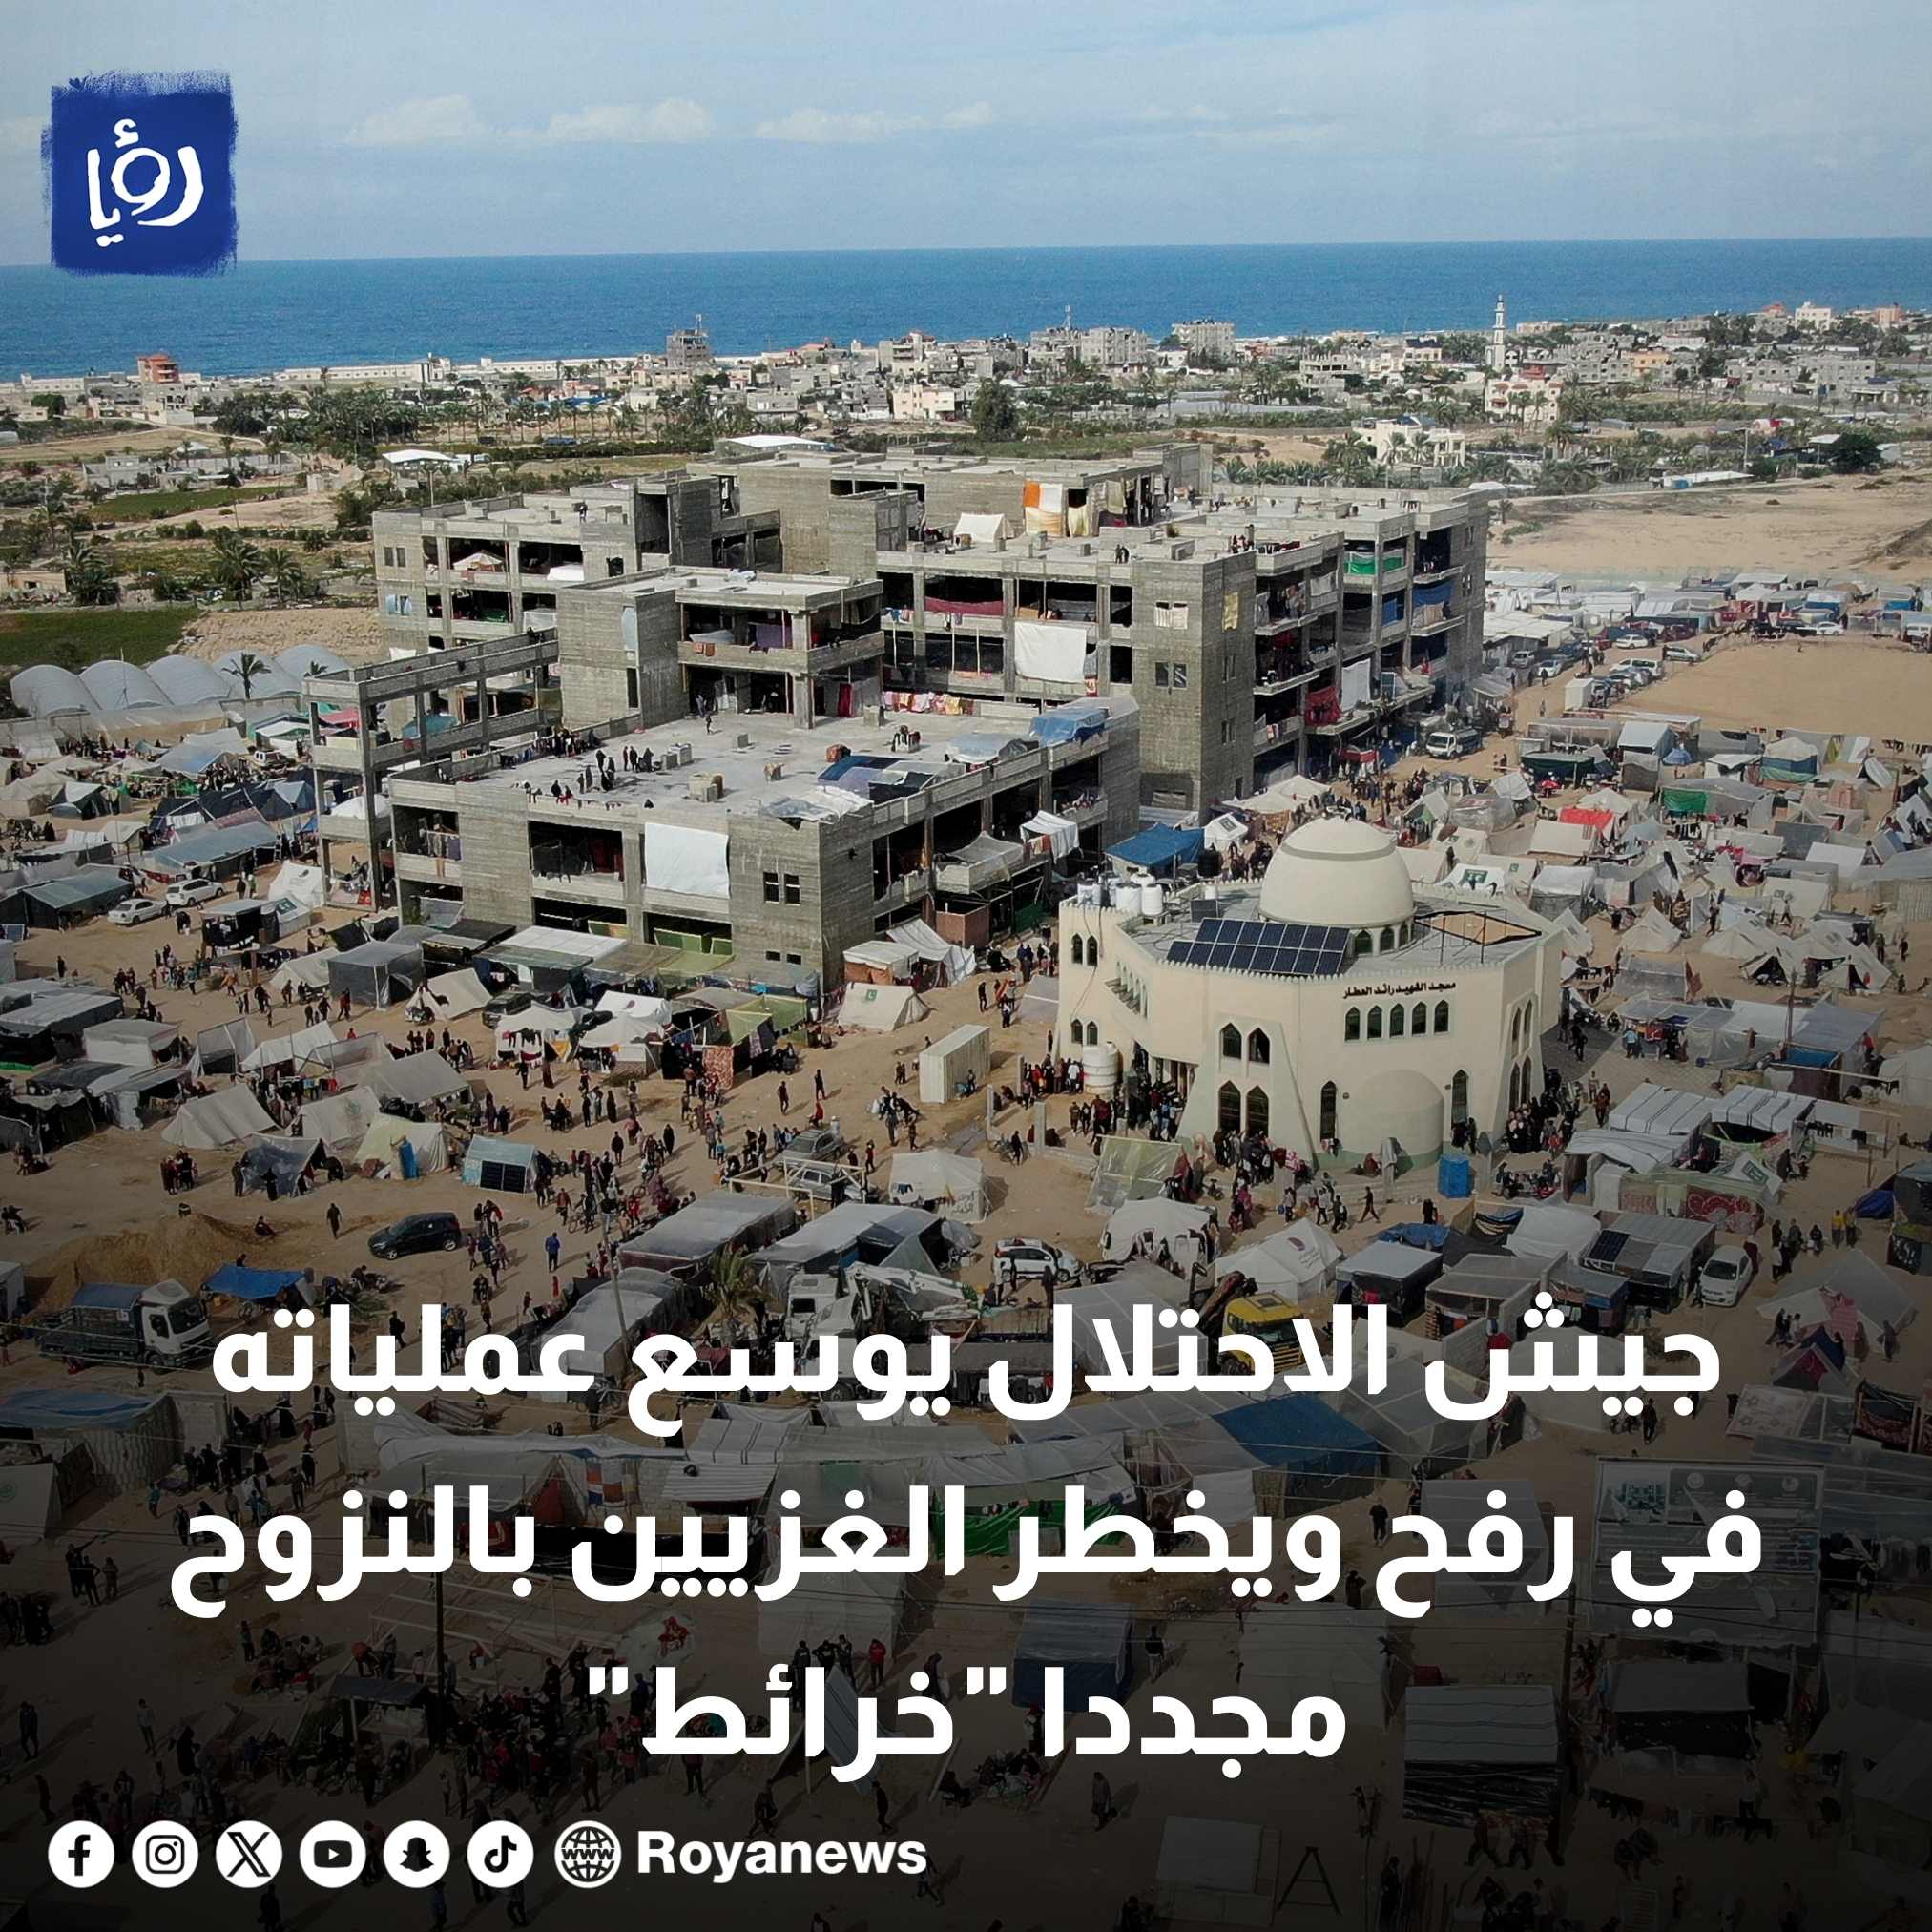 جيش الاحتلال يوسع عملياته في رفح ويخطر الغزيين بالنزوح مجددا "خرائط" #عاجل 